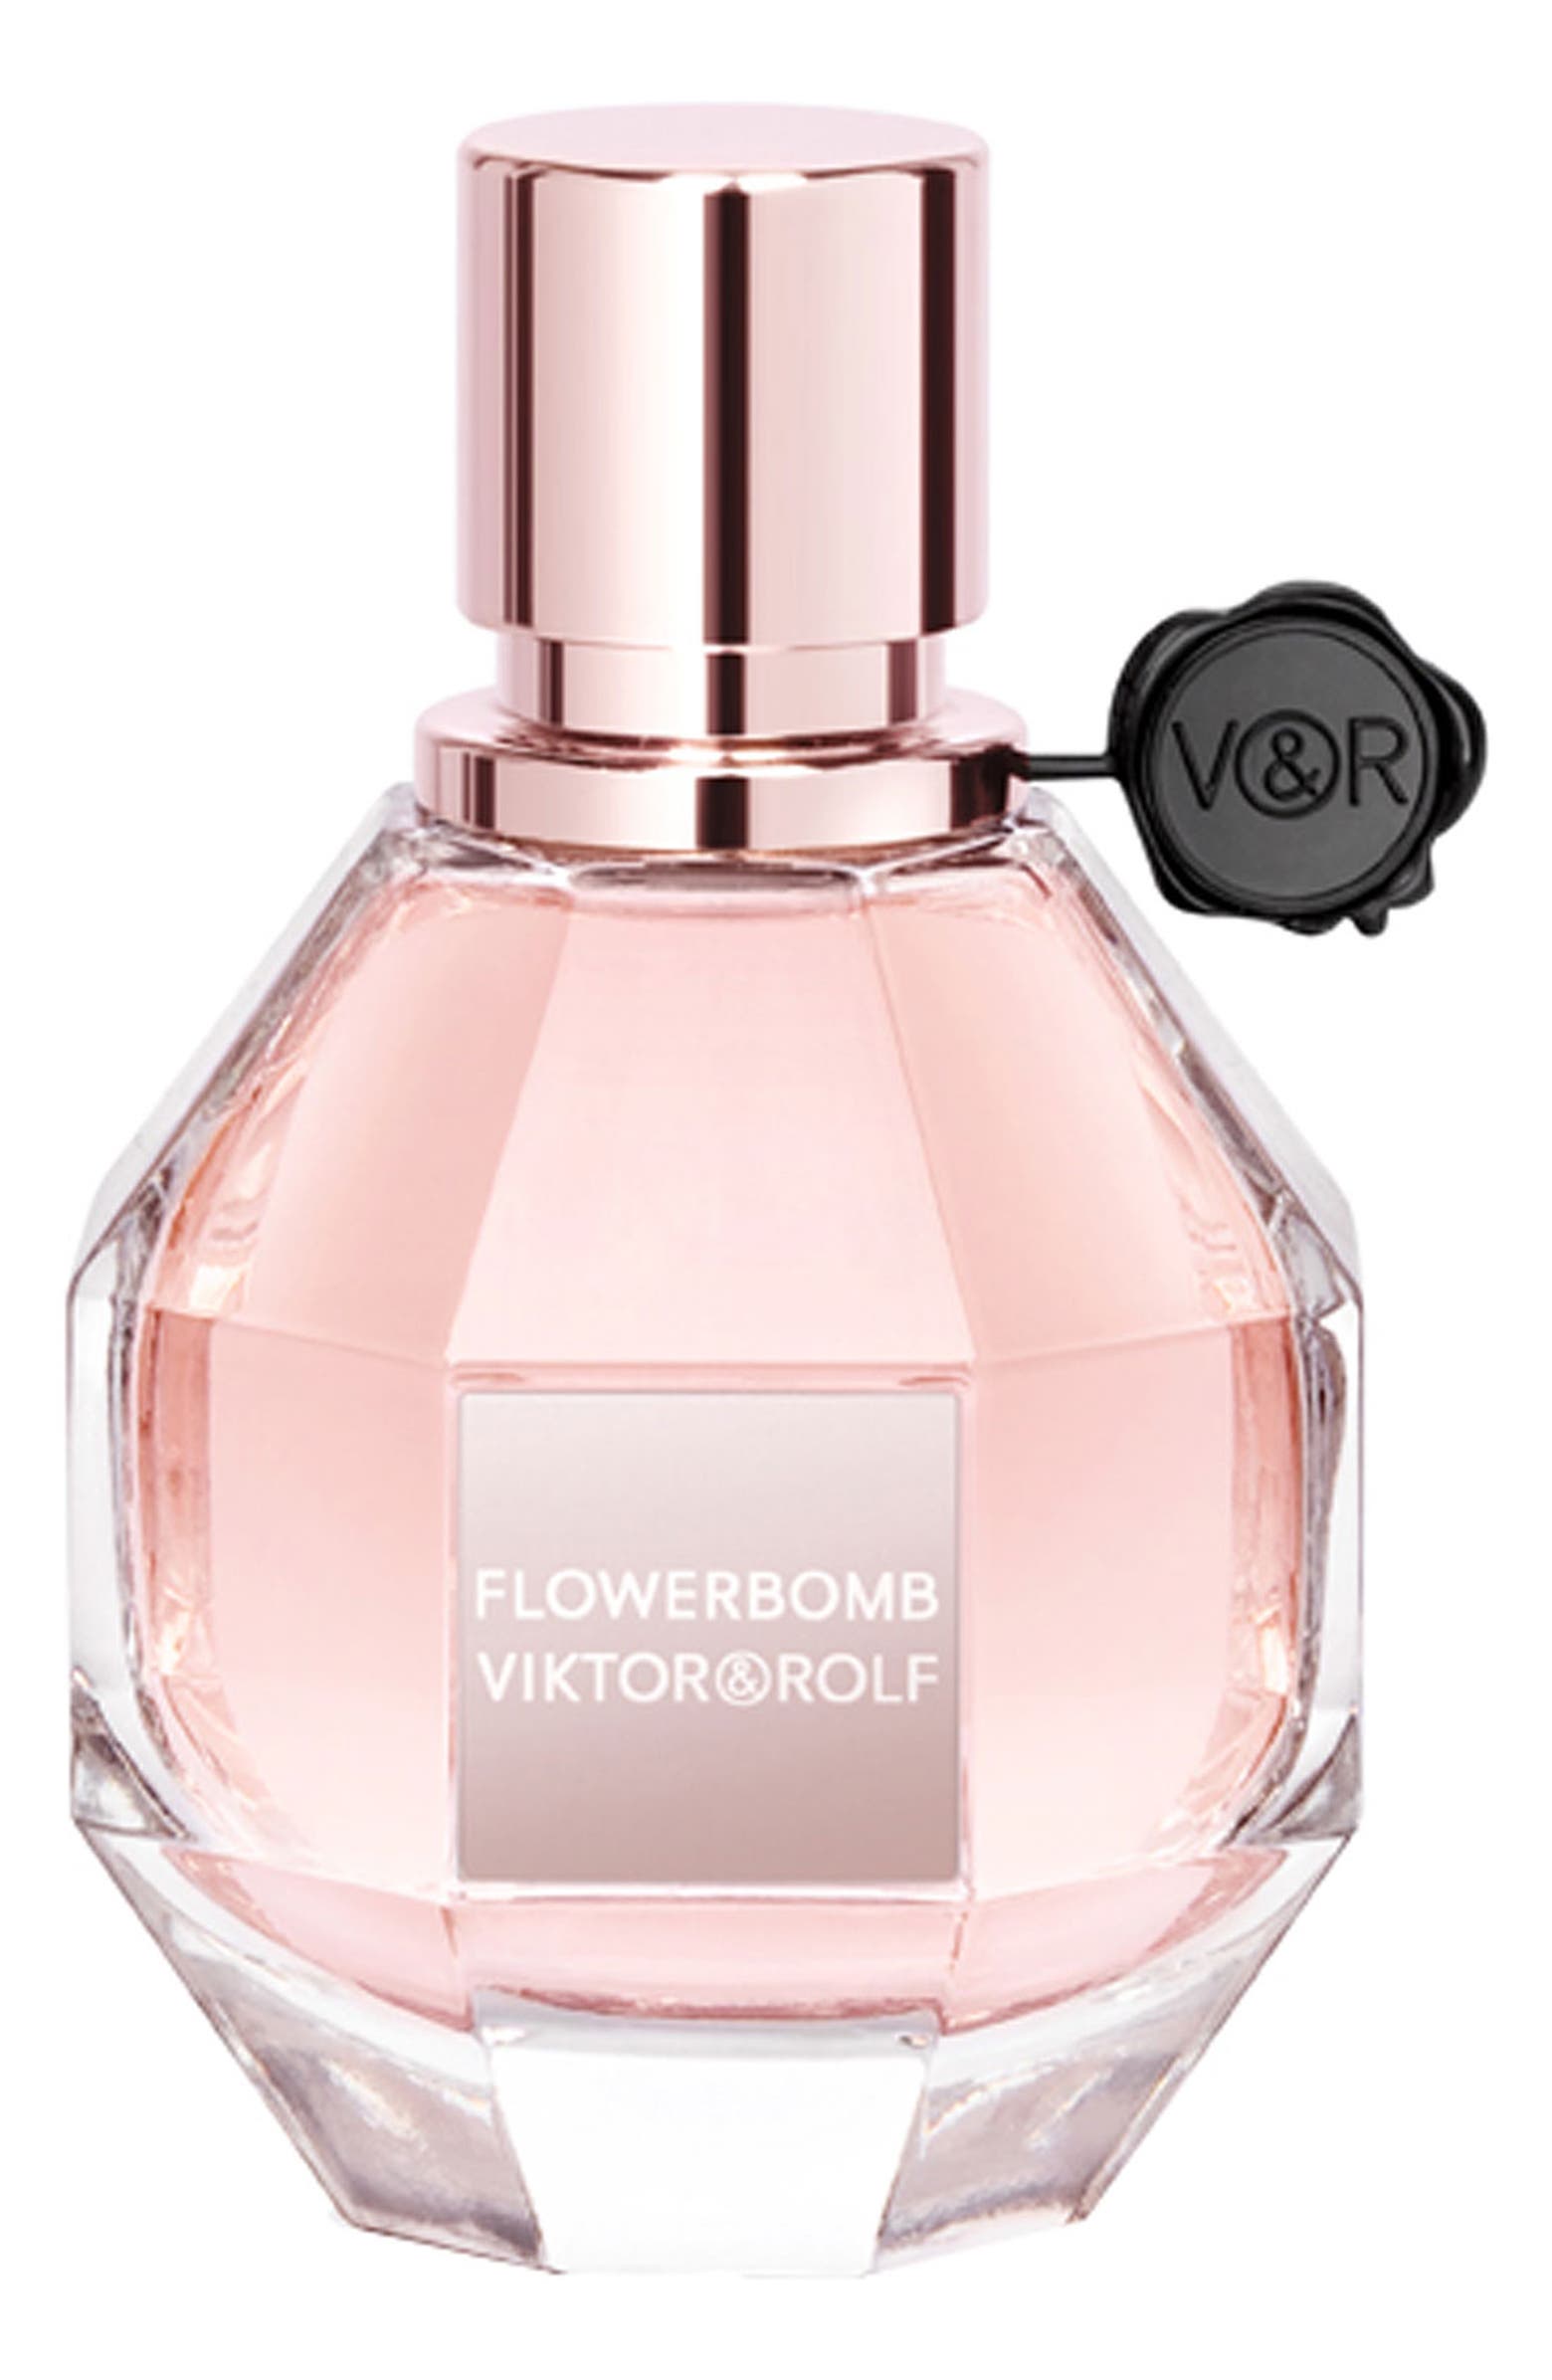 Viktor & Rolf Flowerbomb perfume